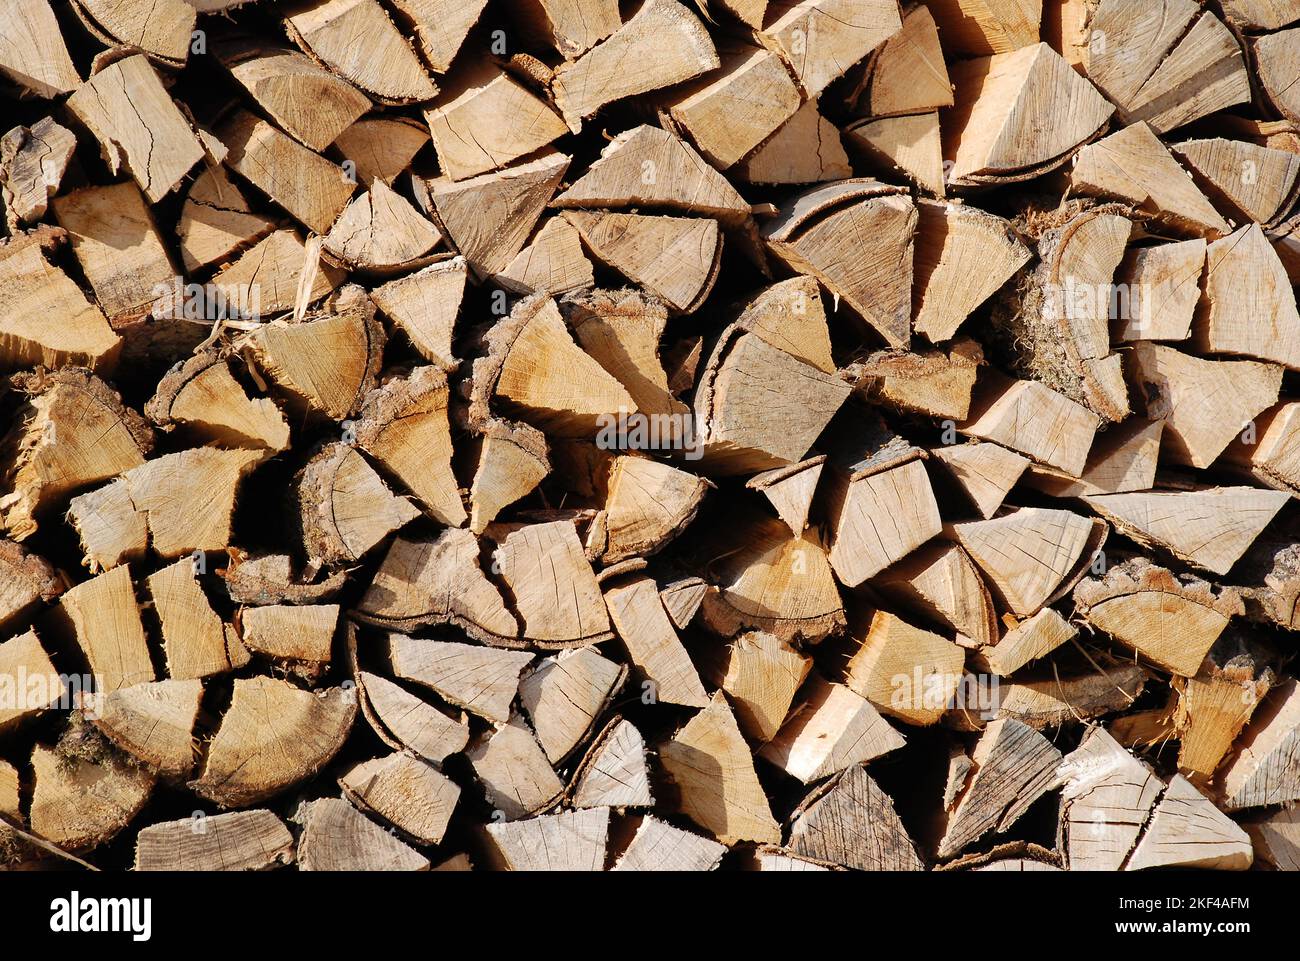 Gestapeltes Brennholz, Kaminholz, Vorrat für den Winter bei steigenden Energiepreisen, Kaminfeuer, Foto Stock